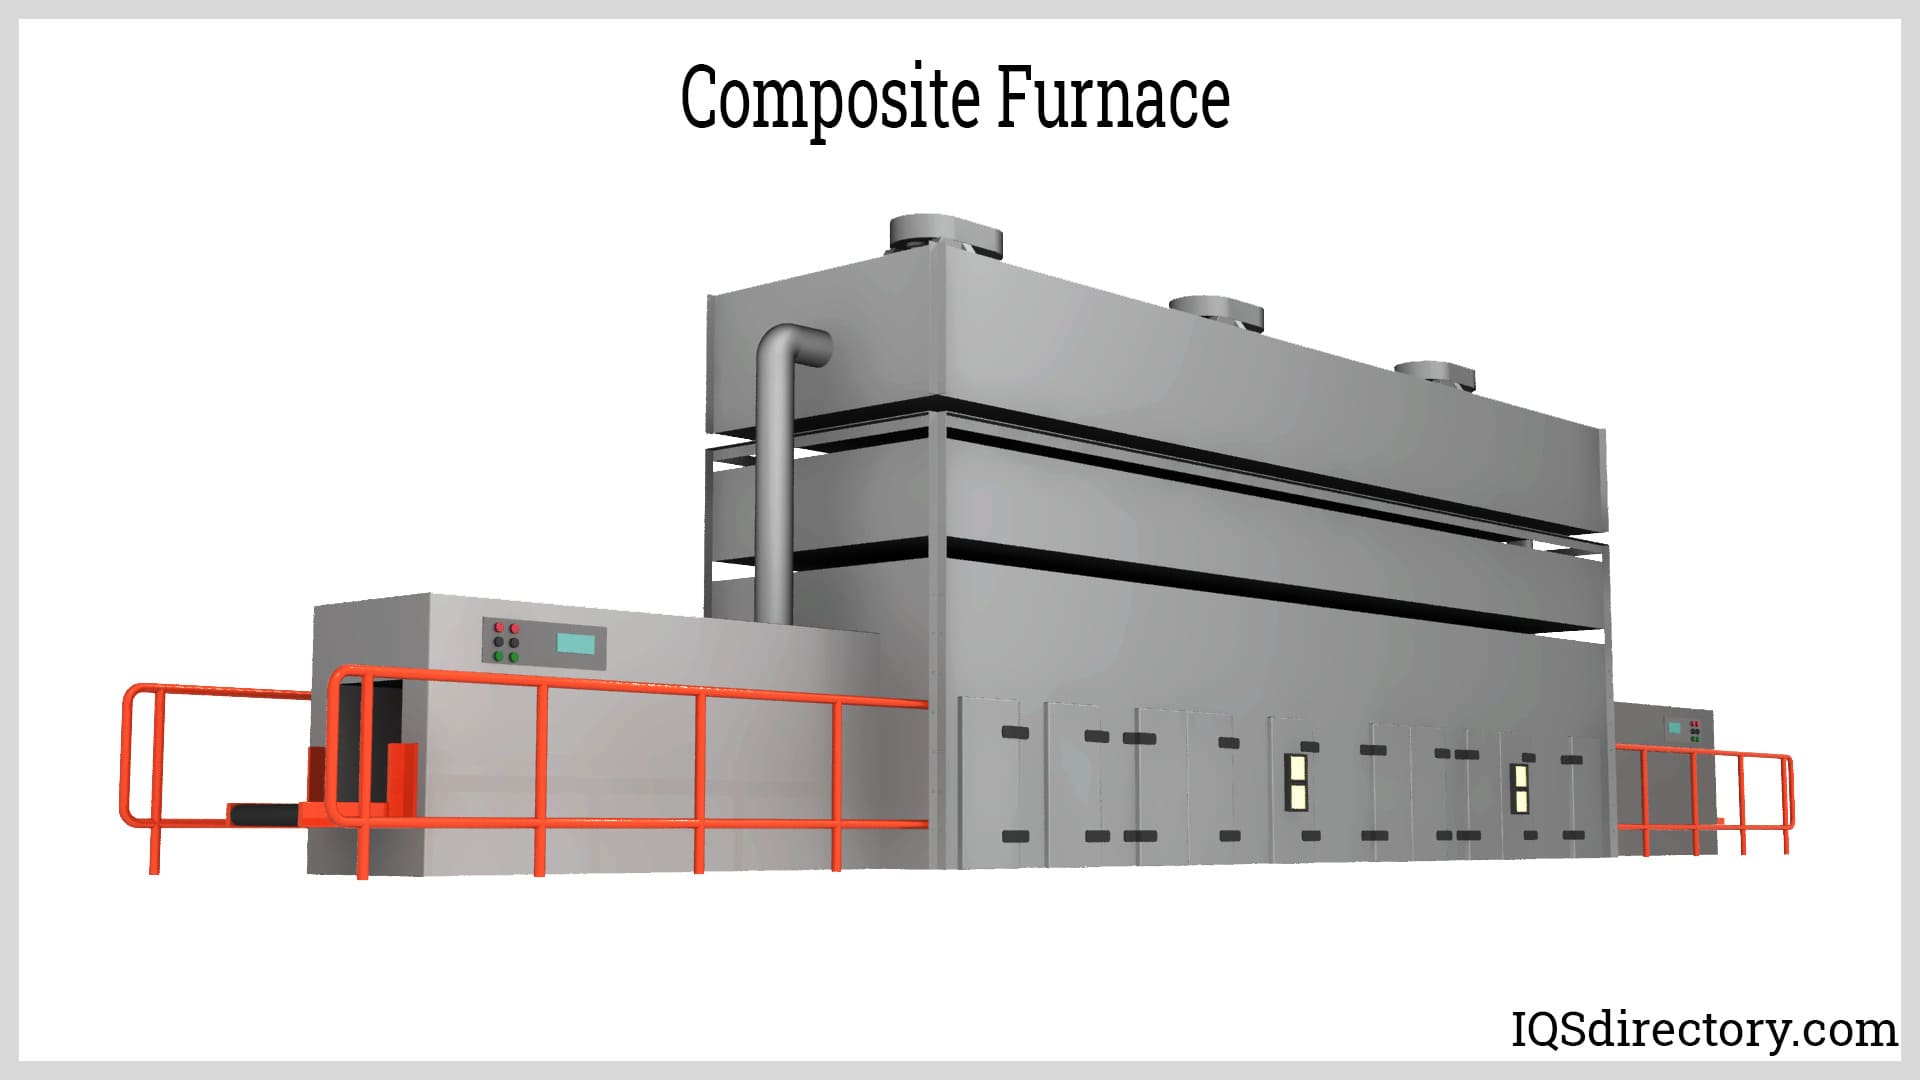 Composite Furnace